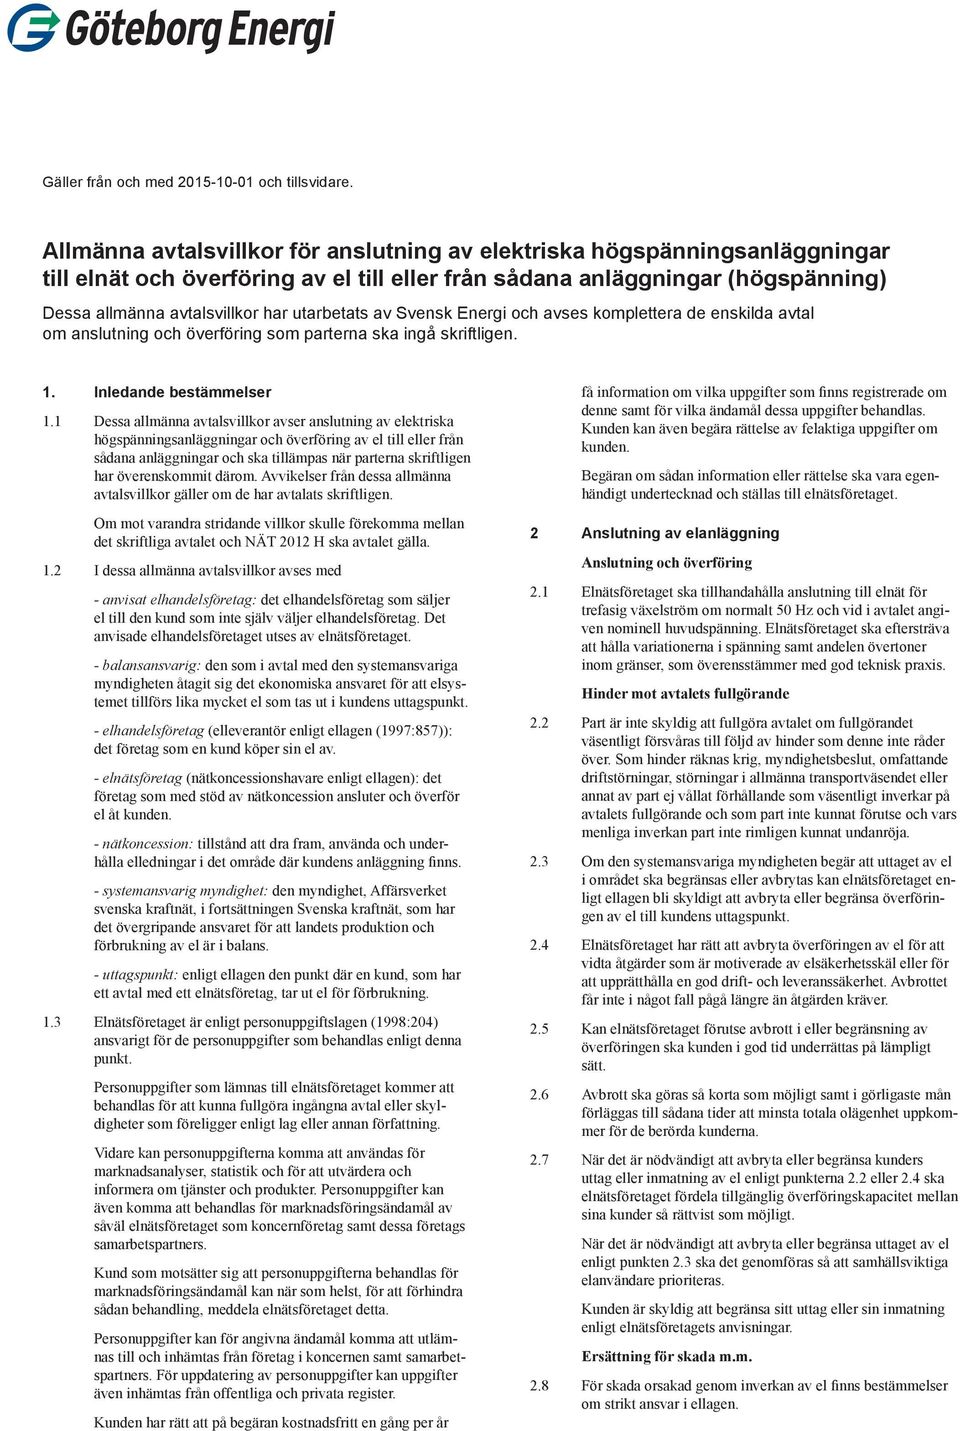 utarbetats av Svensk Energi och avses komplettera de enskilda avtal om anslutning och överföring som parterna ska ingå skriftligen. 1. Inledande bestämmelser 1.